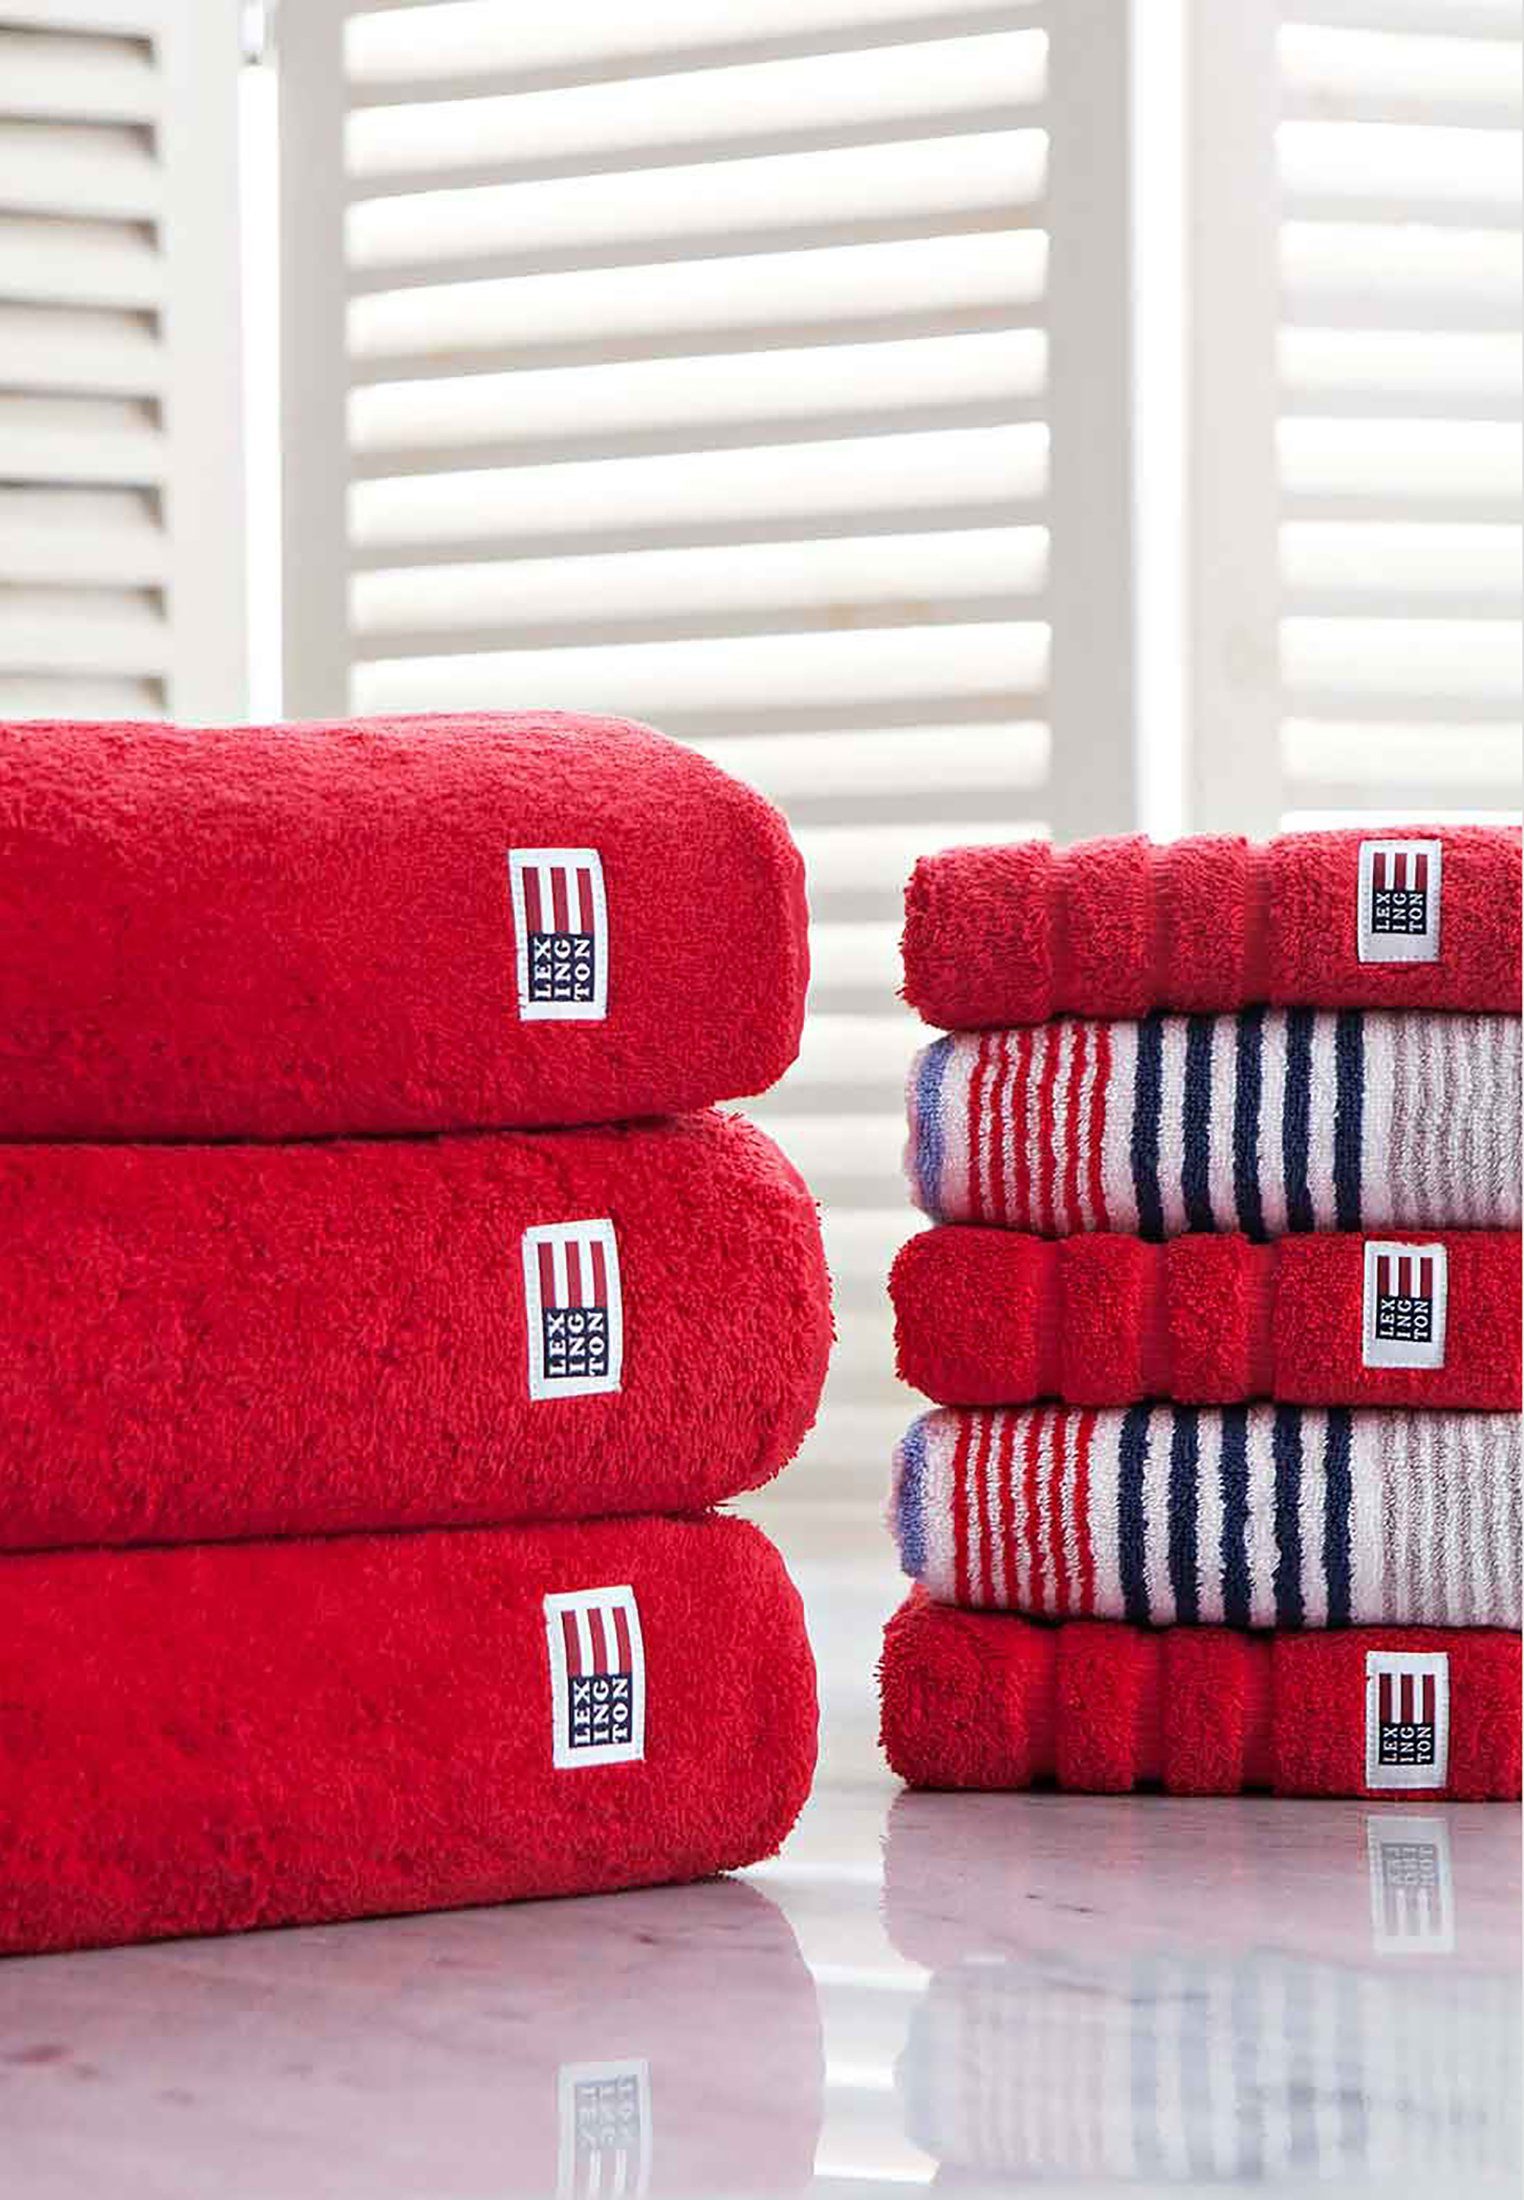 red Original Lexington Handtuch Towel